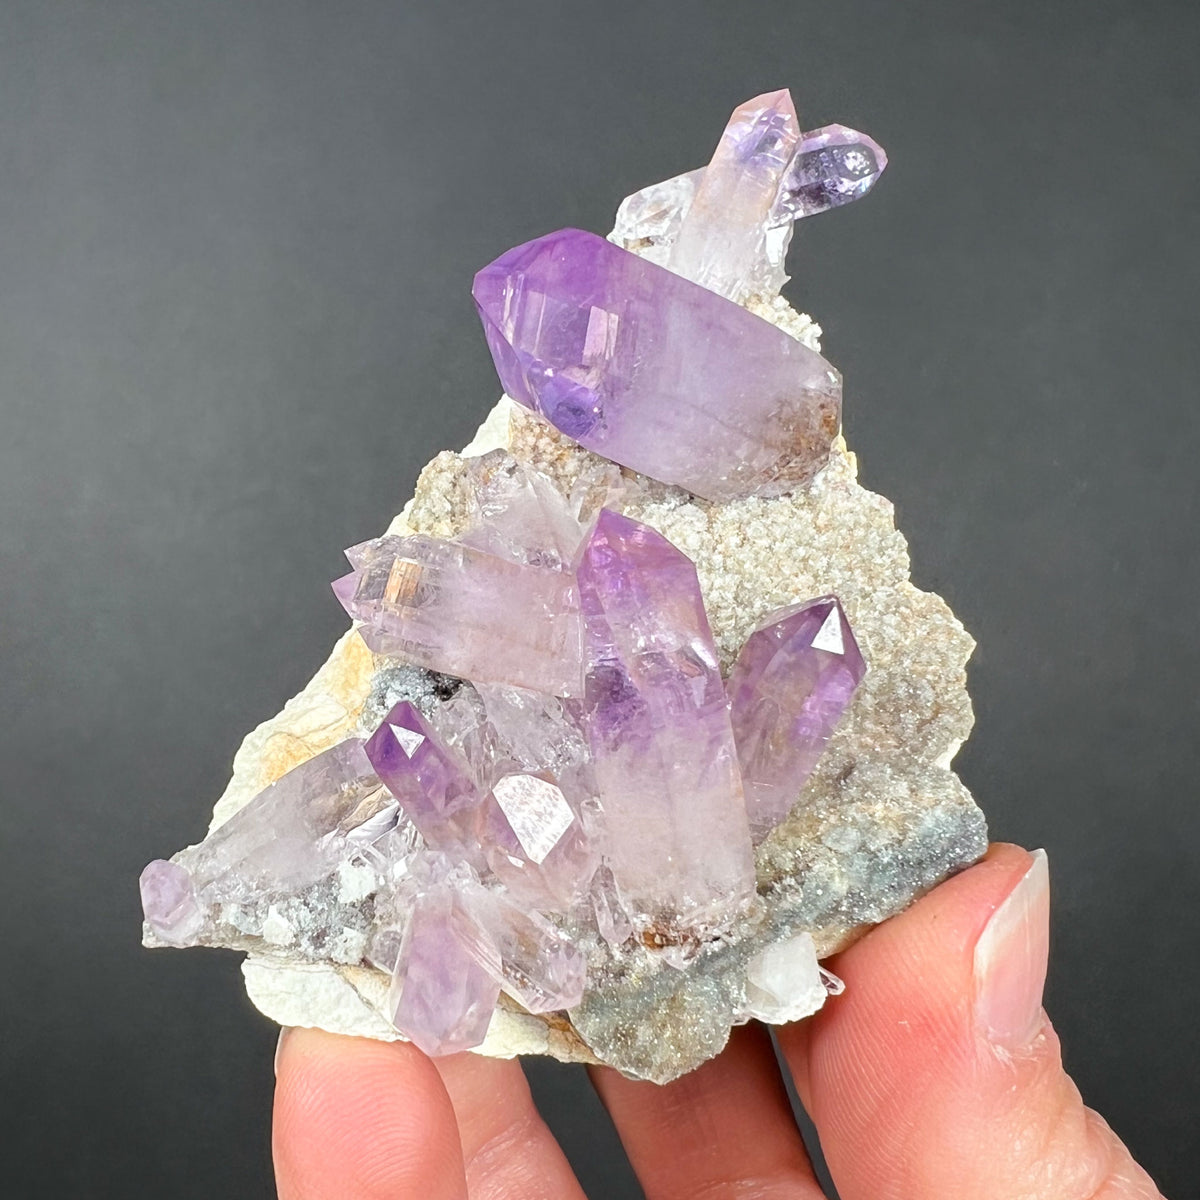 Purple Amethyst from Veracruz Mexico